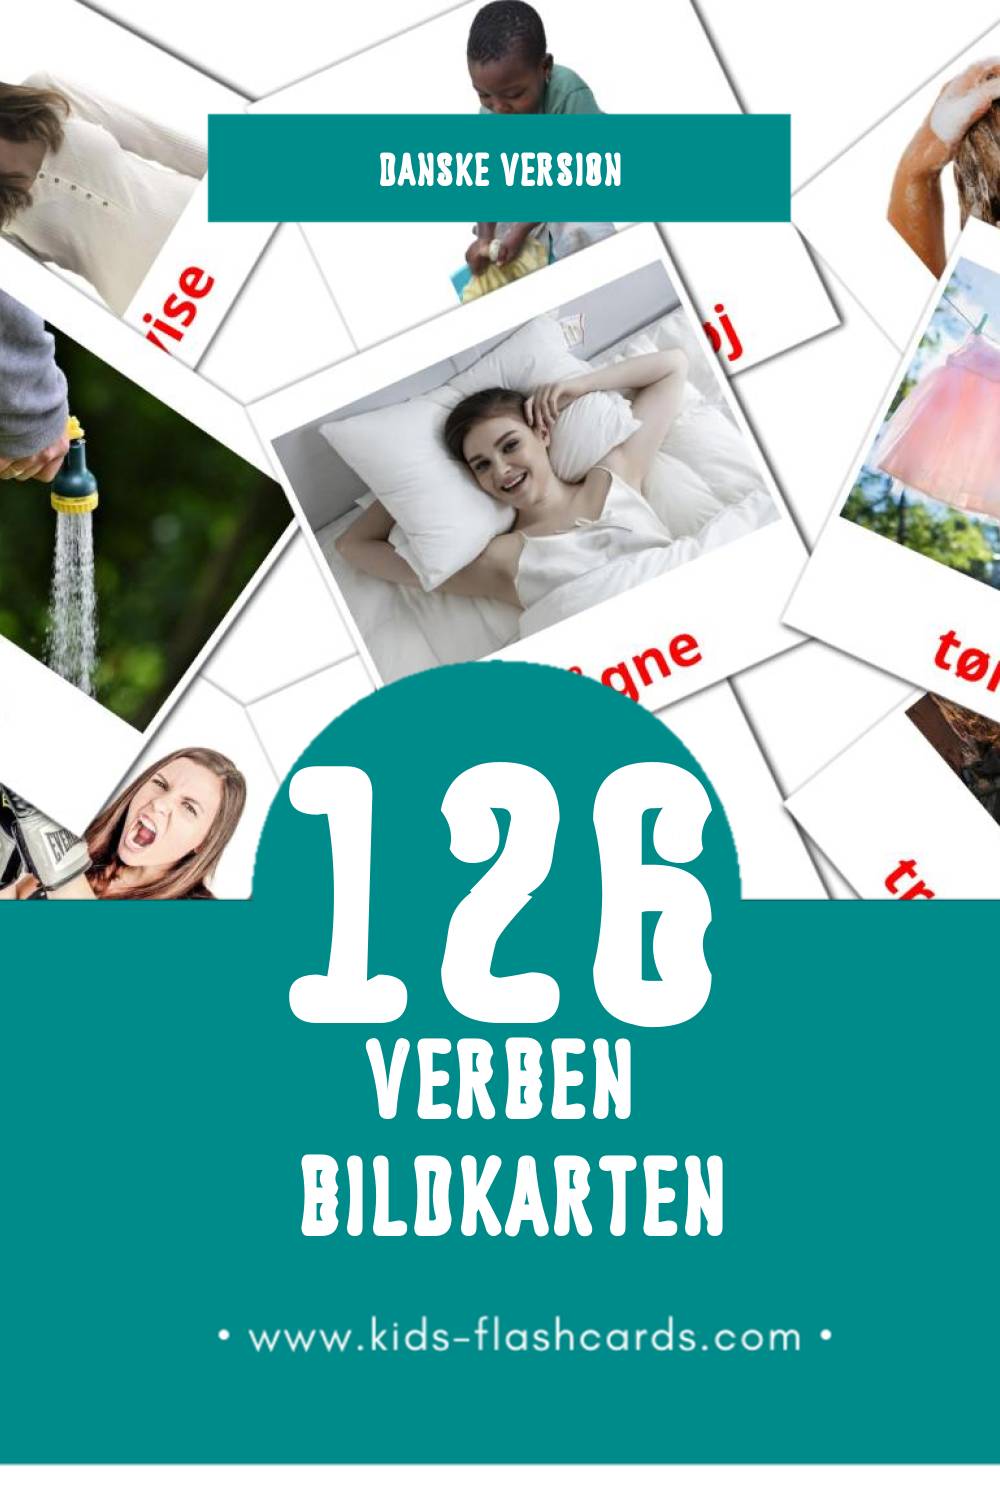 Visual Verber Flashcards für Kleinkinder (126 Karten in Dansk)